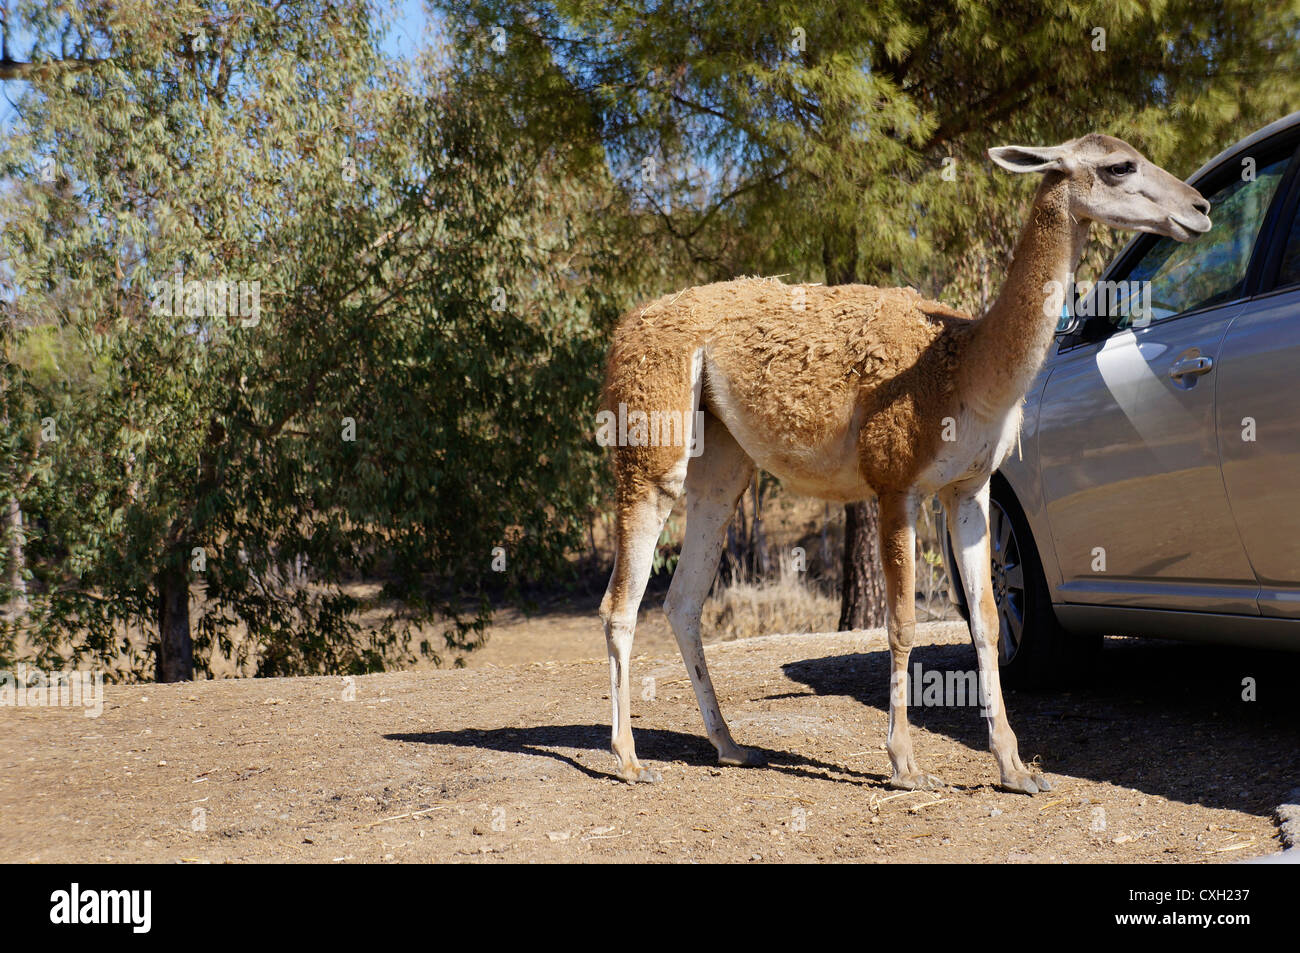 Les touristes en safari à partir de l'alimentation de la voiture, Guanaco (Lama guanicoe) debout sur le terrain, à la Reserva Sevilla, le parc safari Banque D'Images